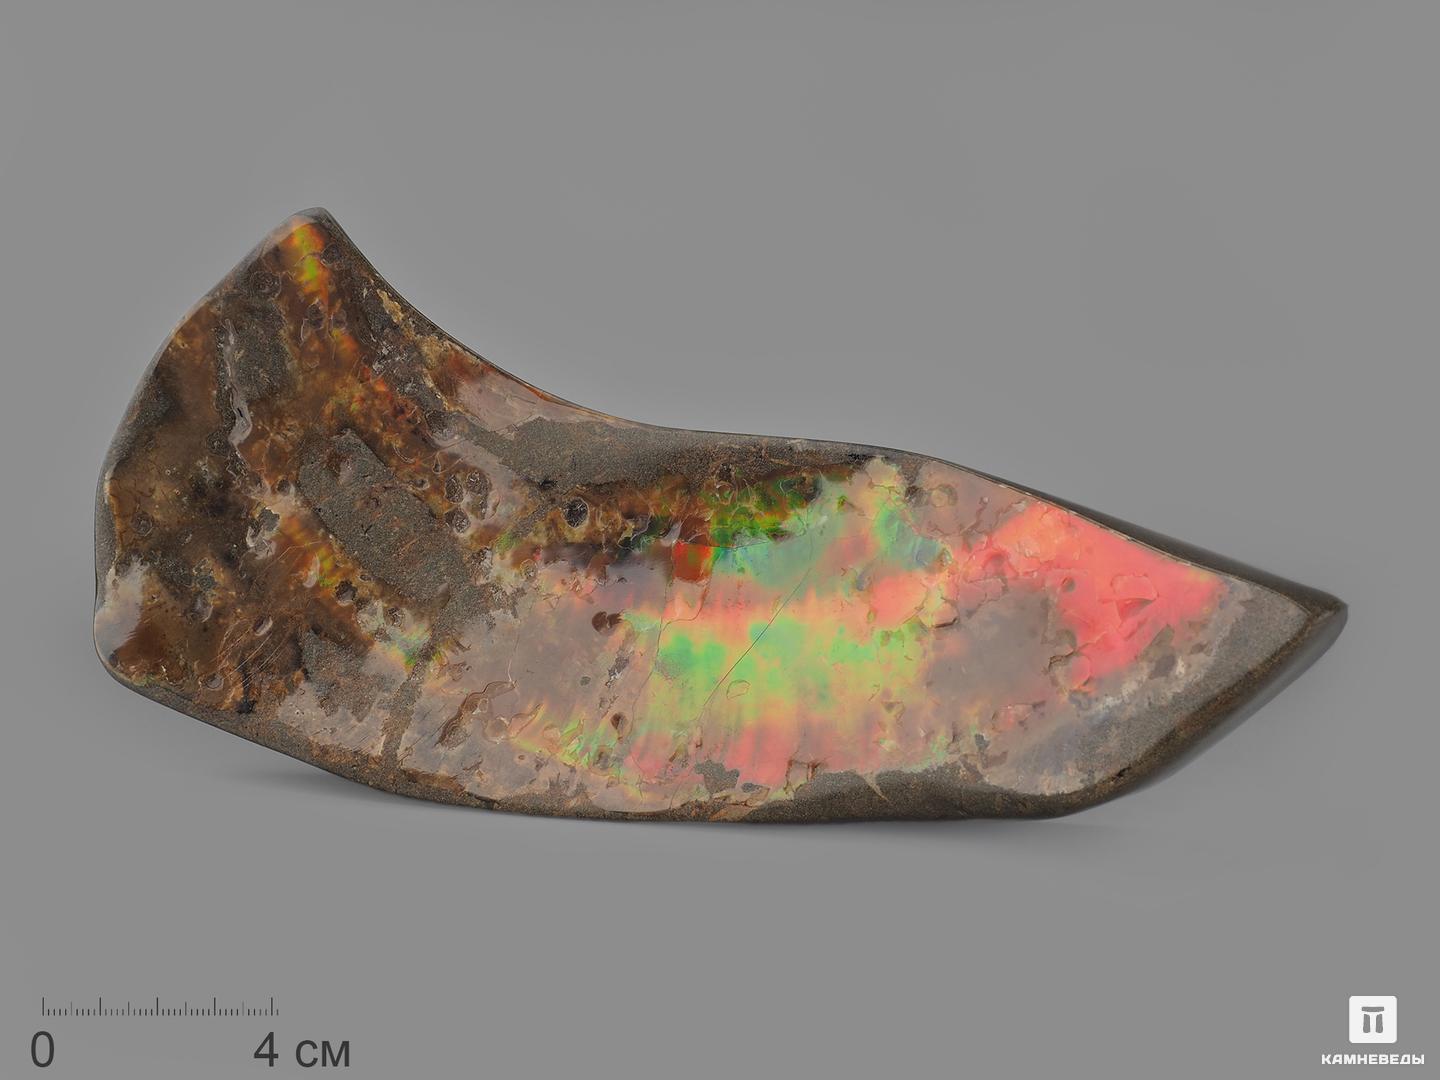 Аммолит (ископаемый перламутр аммонита), 19х8,2х3,8 см, 14763, фото 1